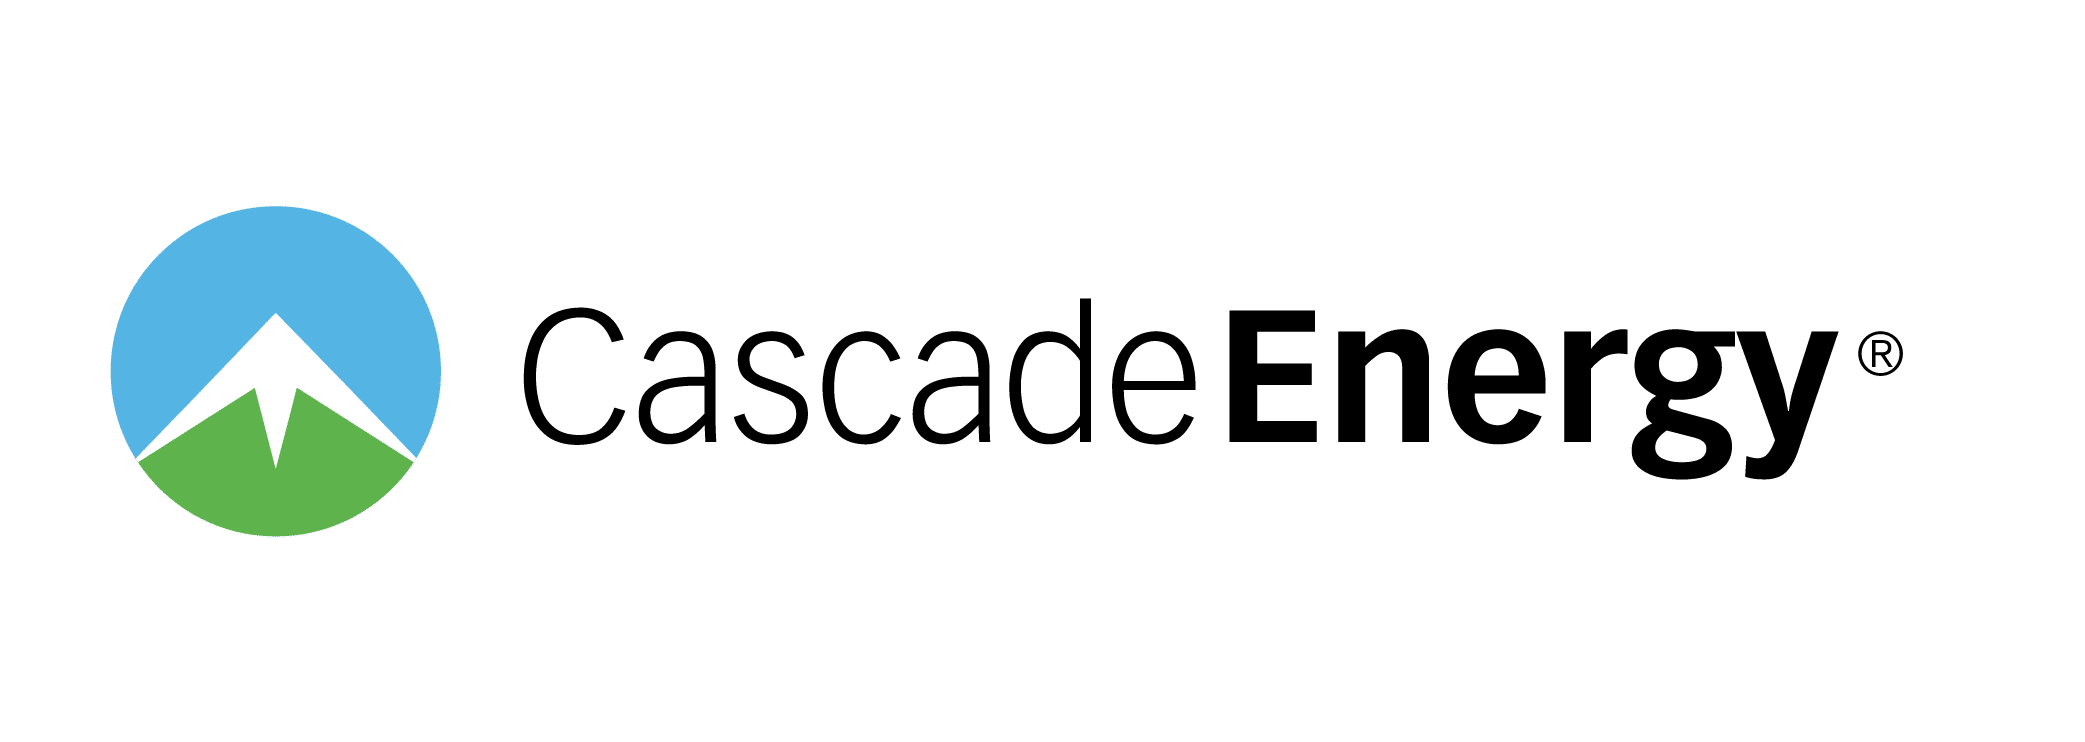 Cascade Energy Services